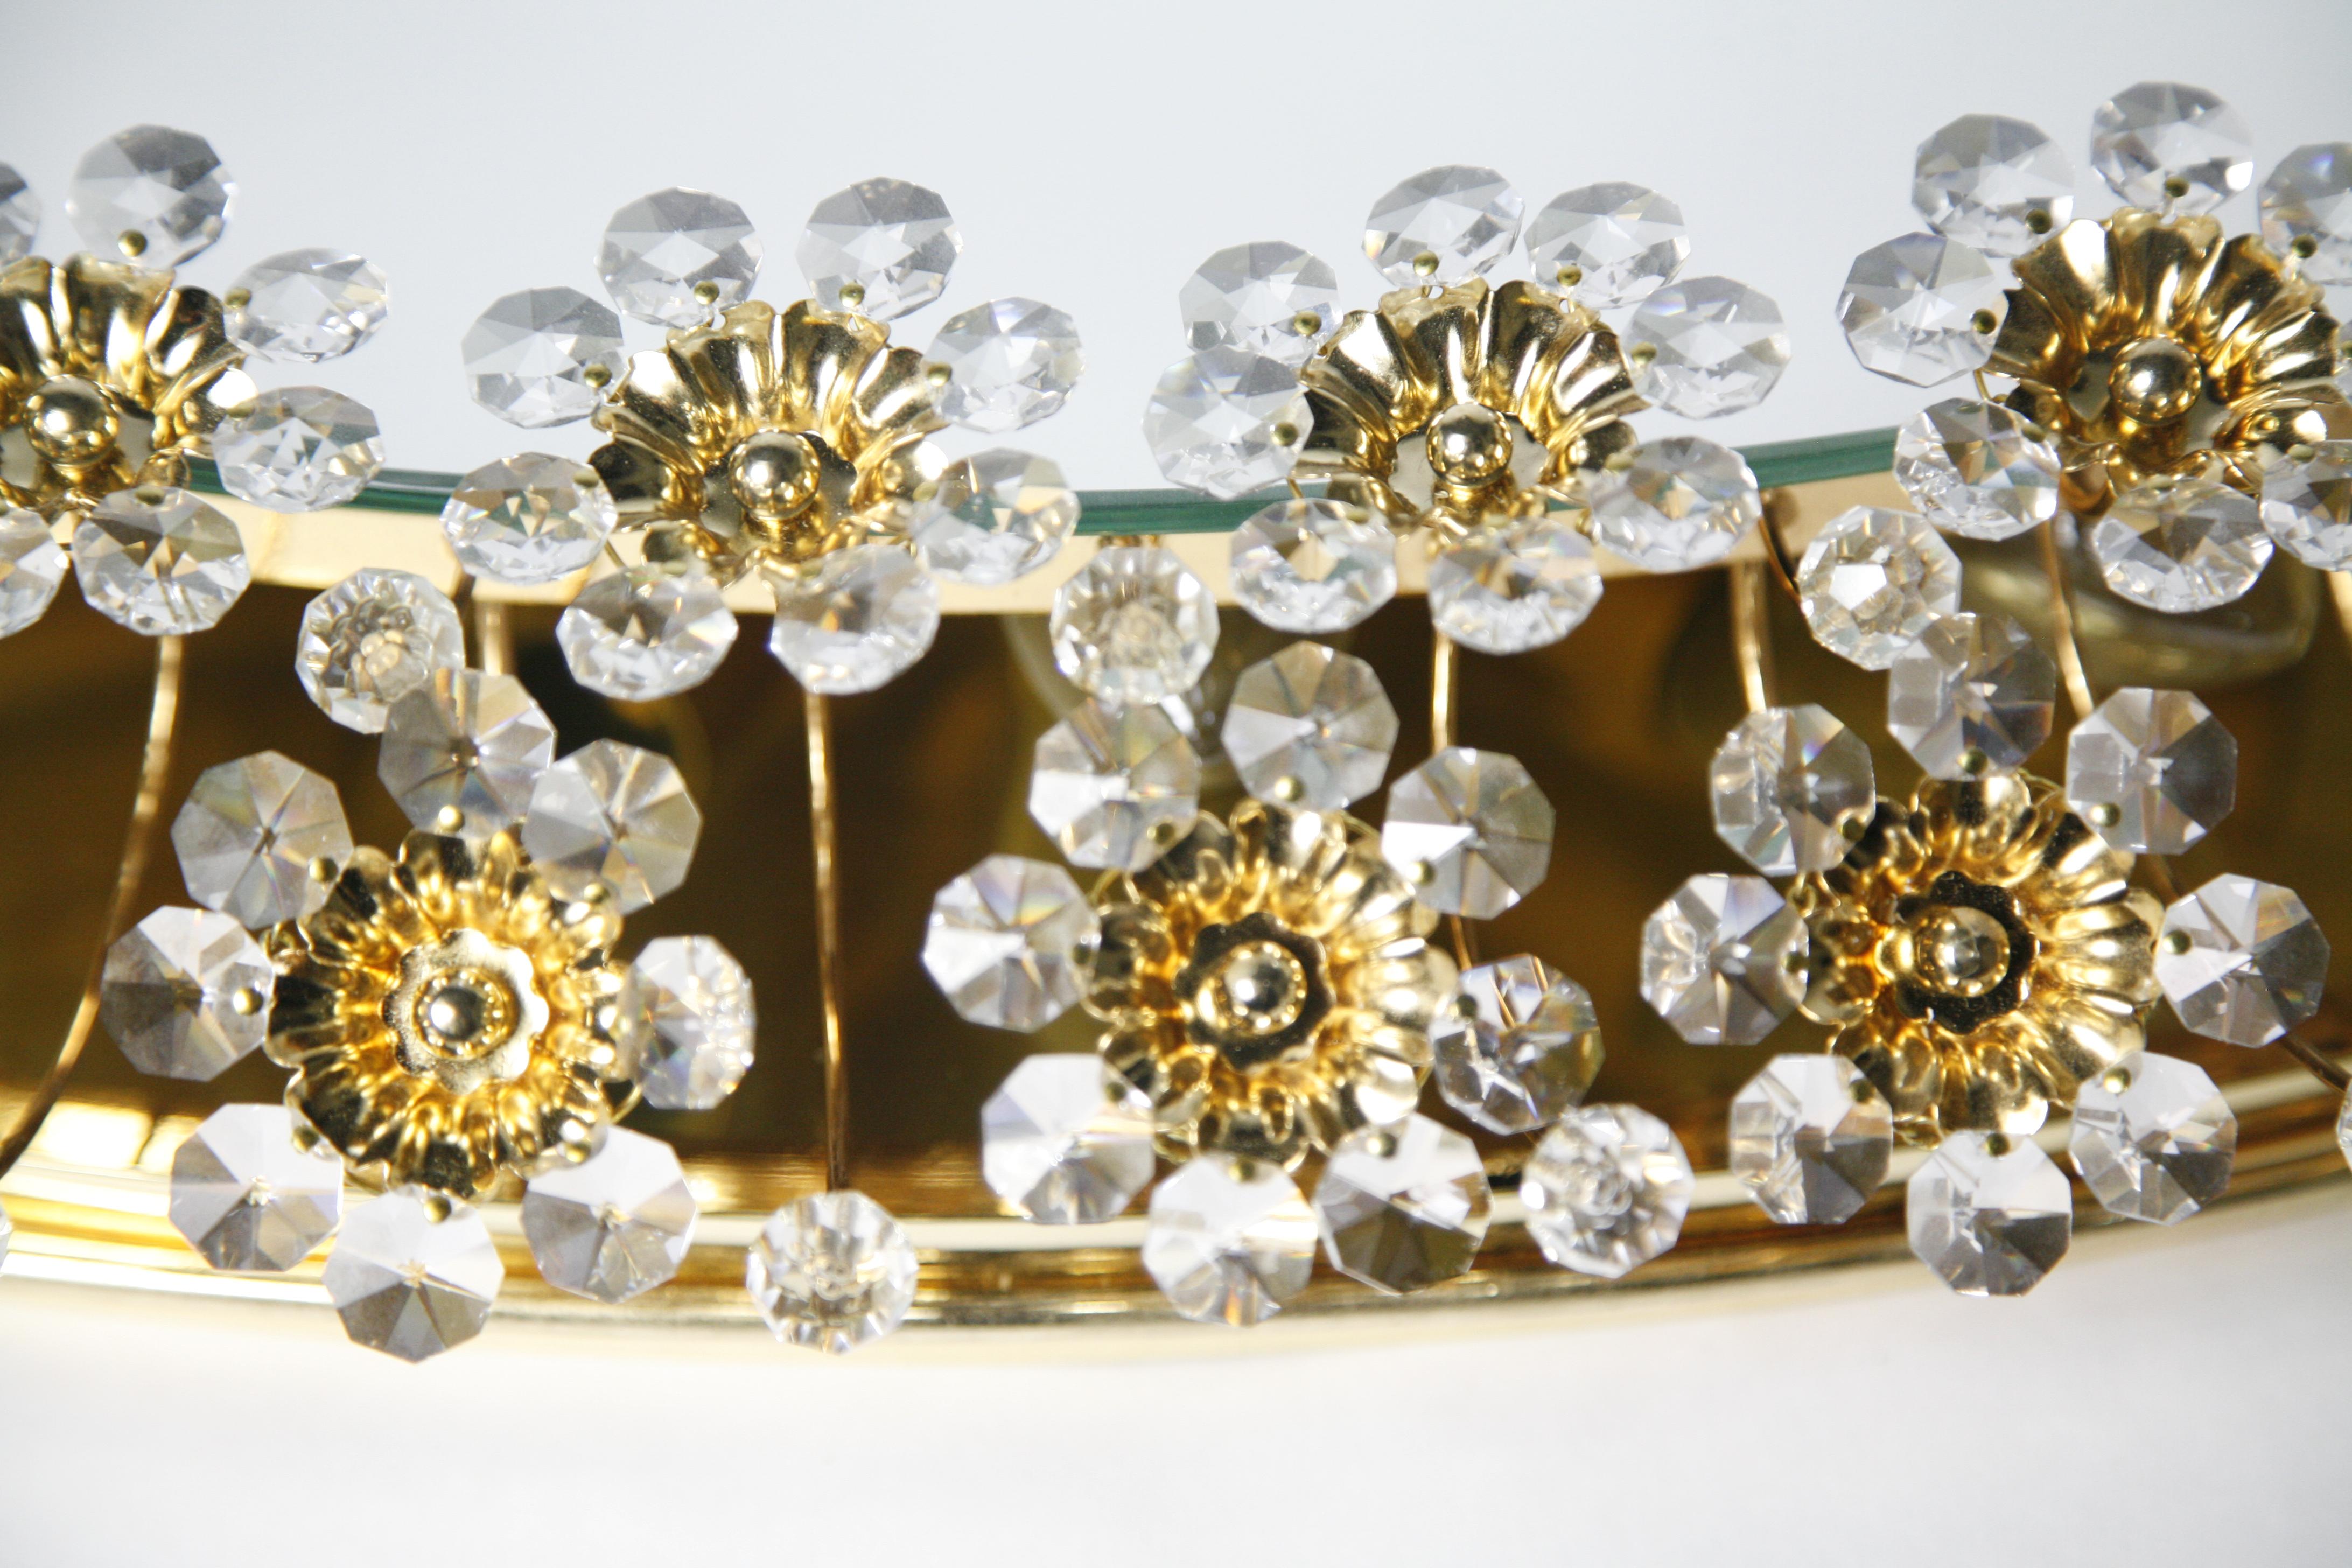 Milieu du XXe siècle 1970 Miroir Palwa en forme d'ellipse Cadre plaqué or 24 carats entouré d'ornements en cristal taillé en diamant avec de nombreux cristaux taillés et perles de cristal par Swarovski cristaux Autriche.
Ce miroir est rétroéclairé